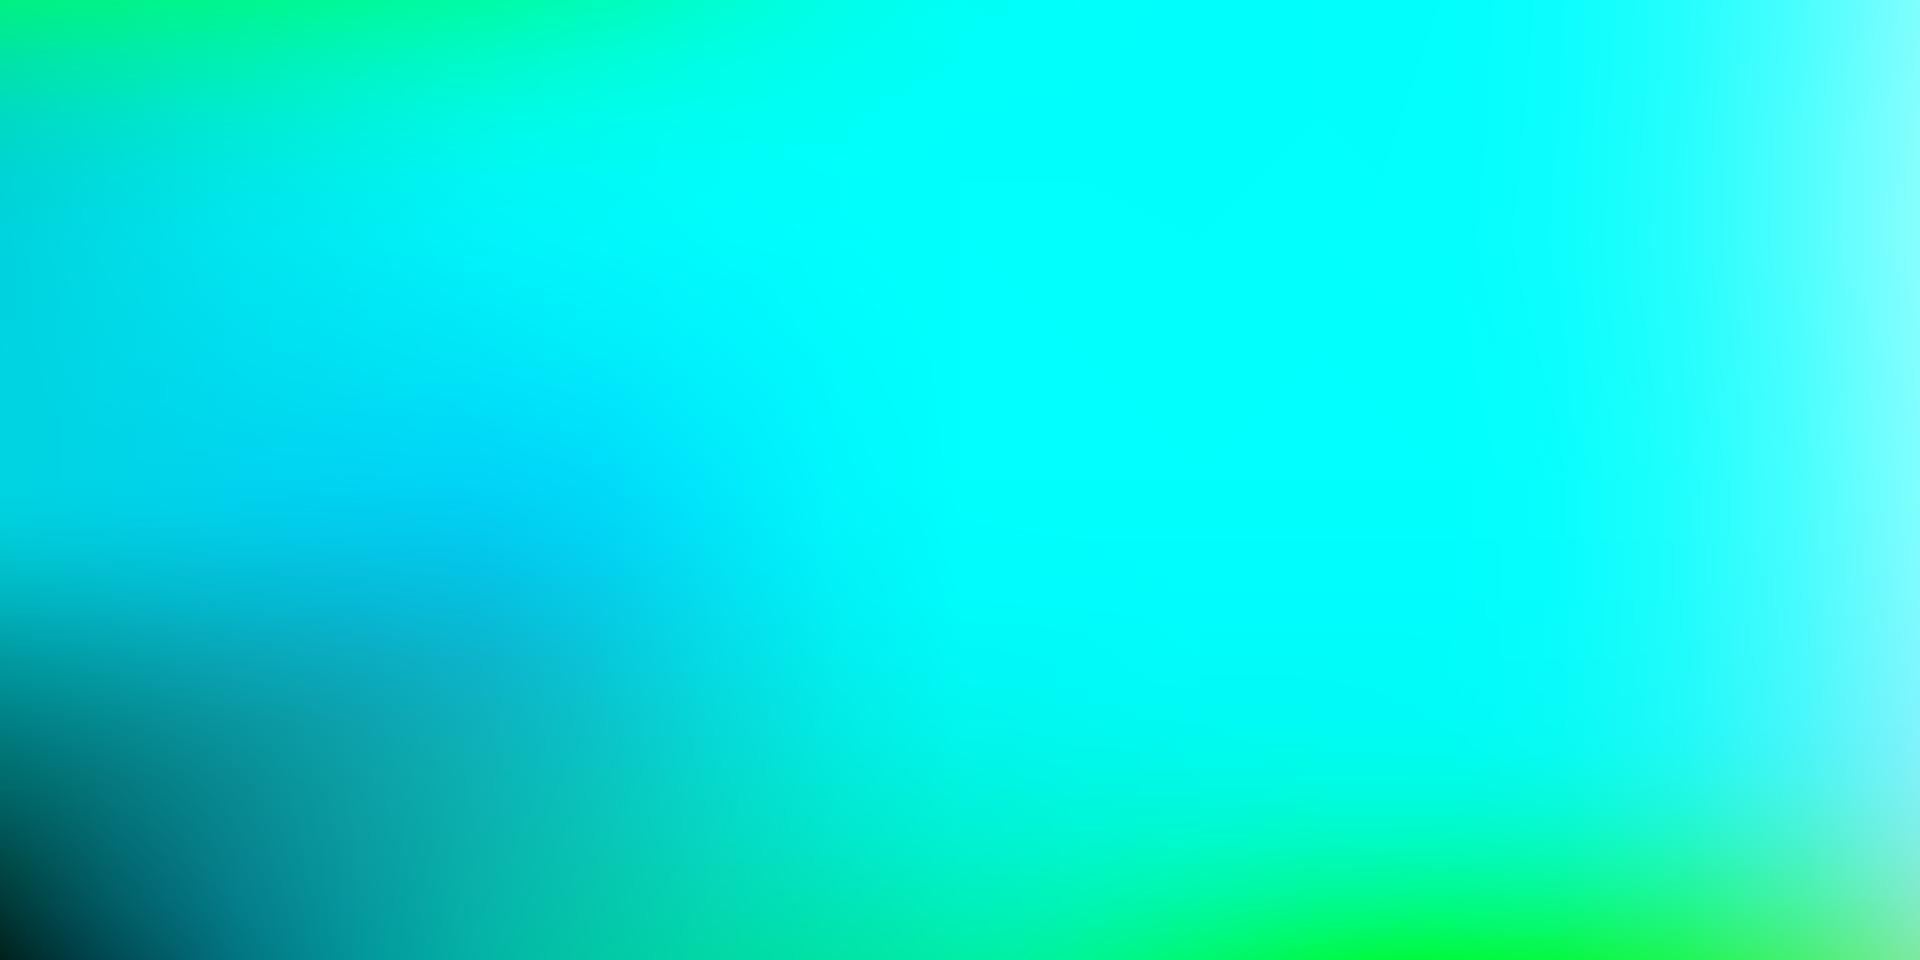 hellblauer, grüner Vektor abstrakter Unschärfehintergrund.